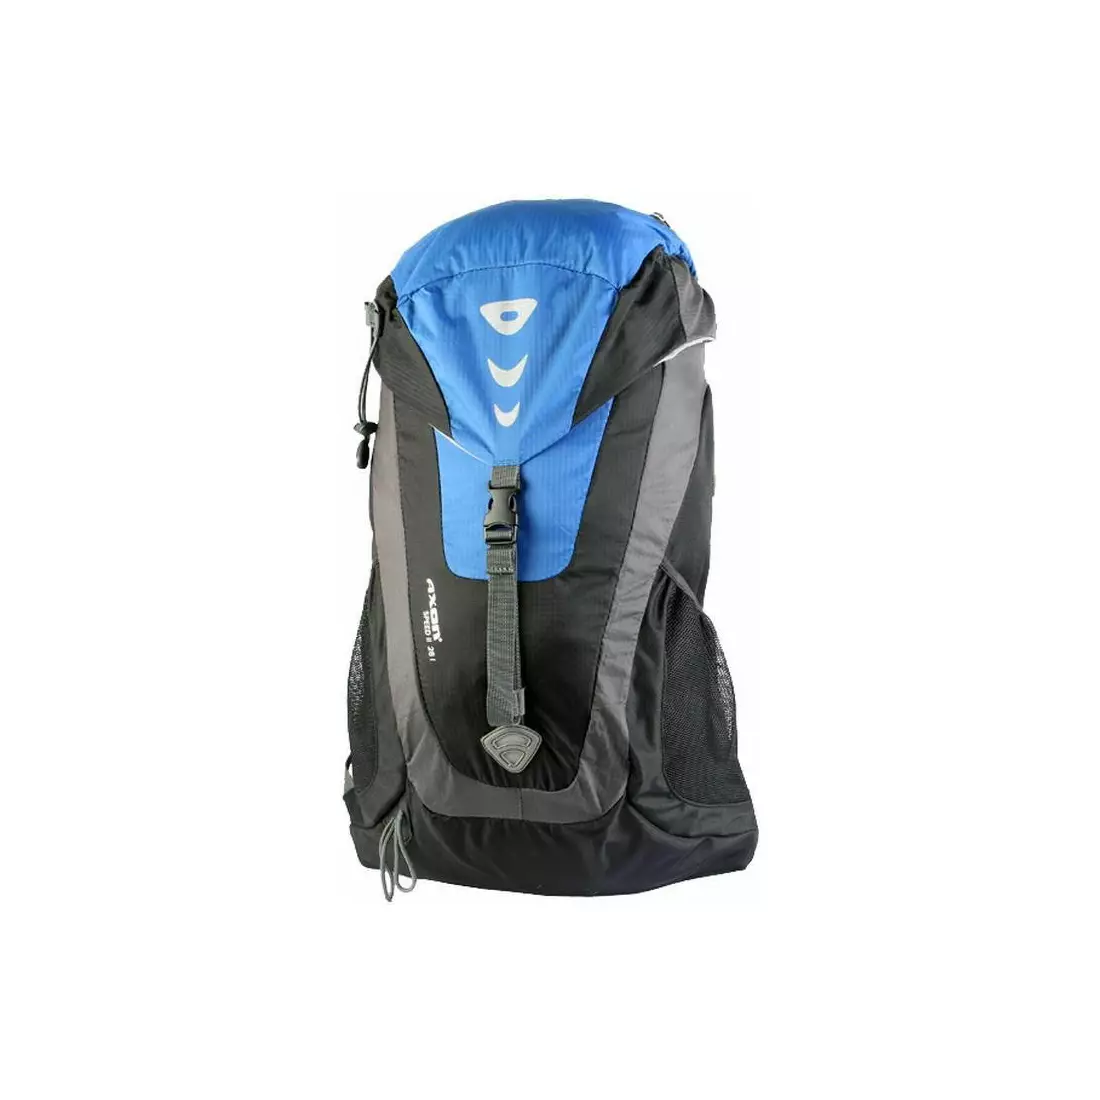 AXON SPEED II ULTRALIGHT - sportovní/cyklistický batoh 28L - barva: Modrá